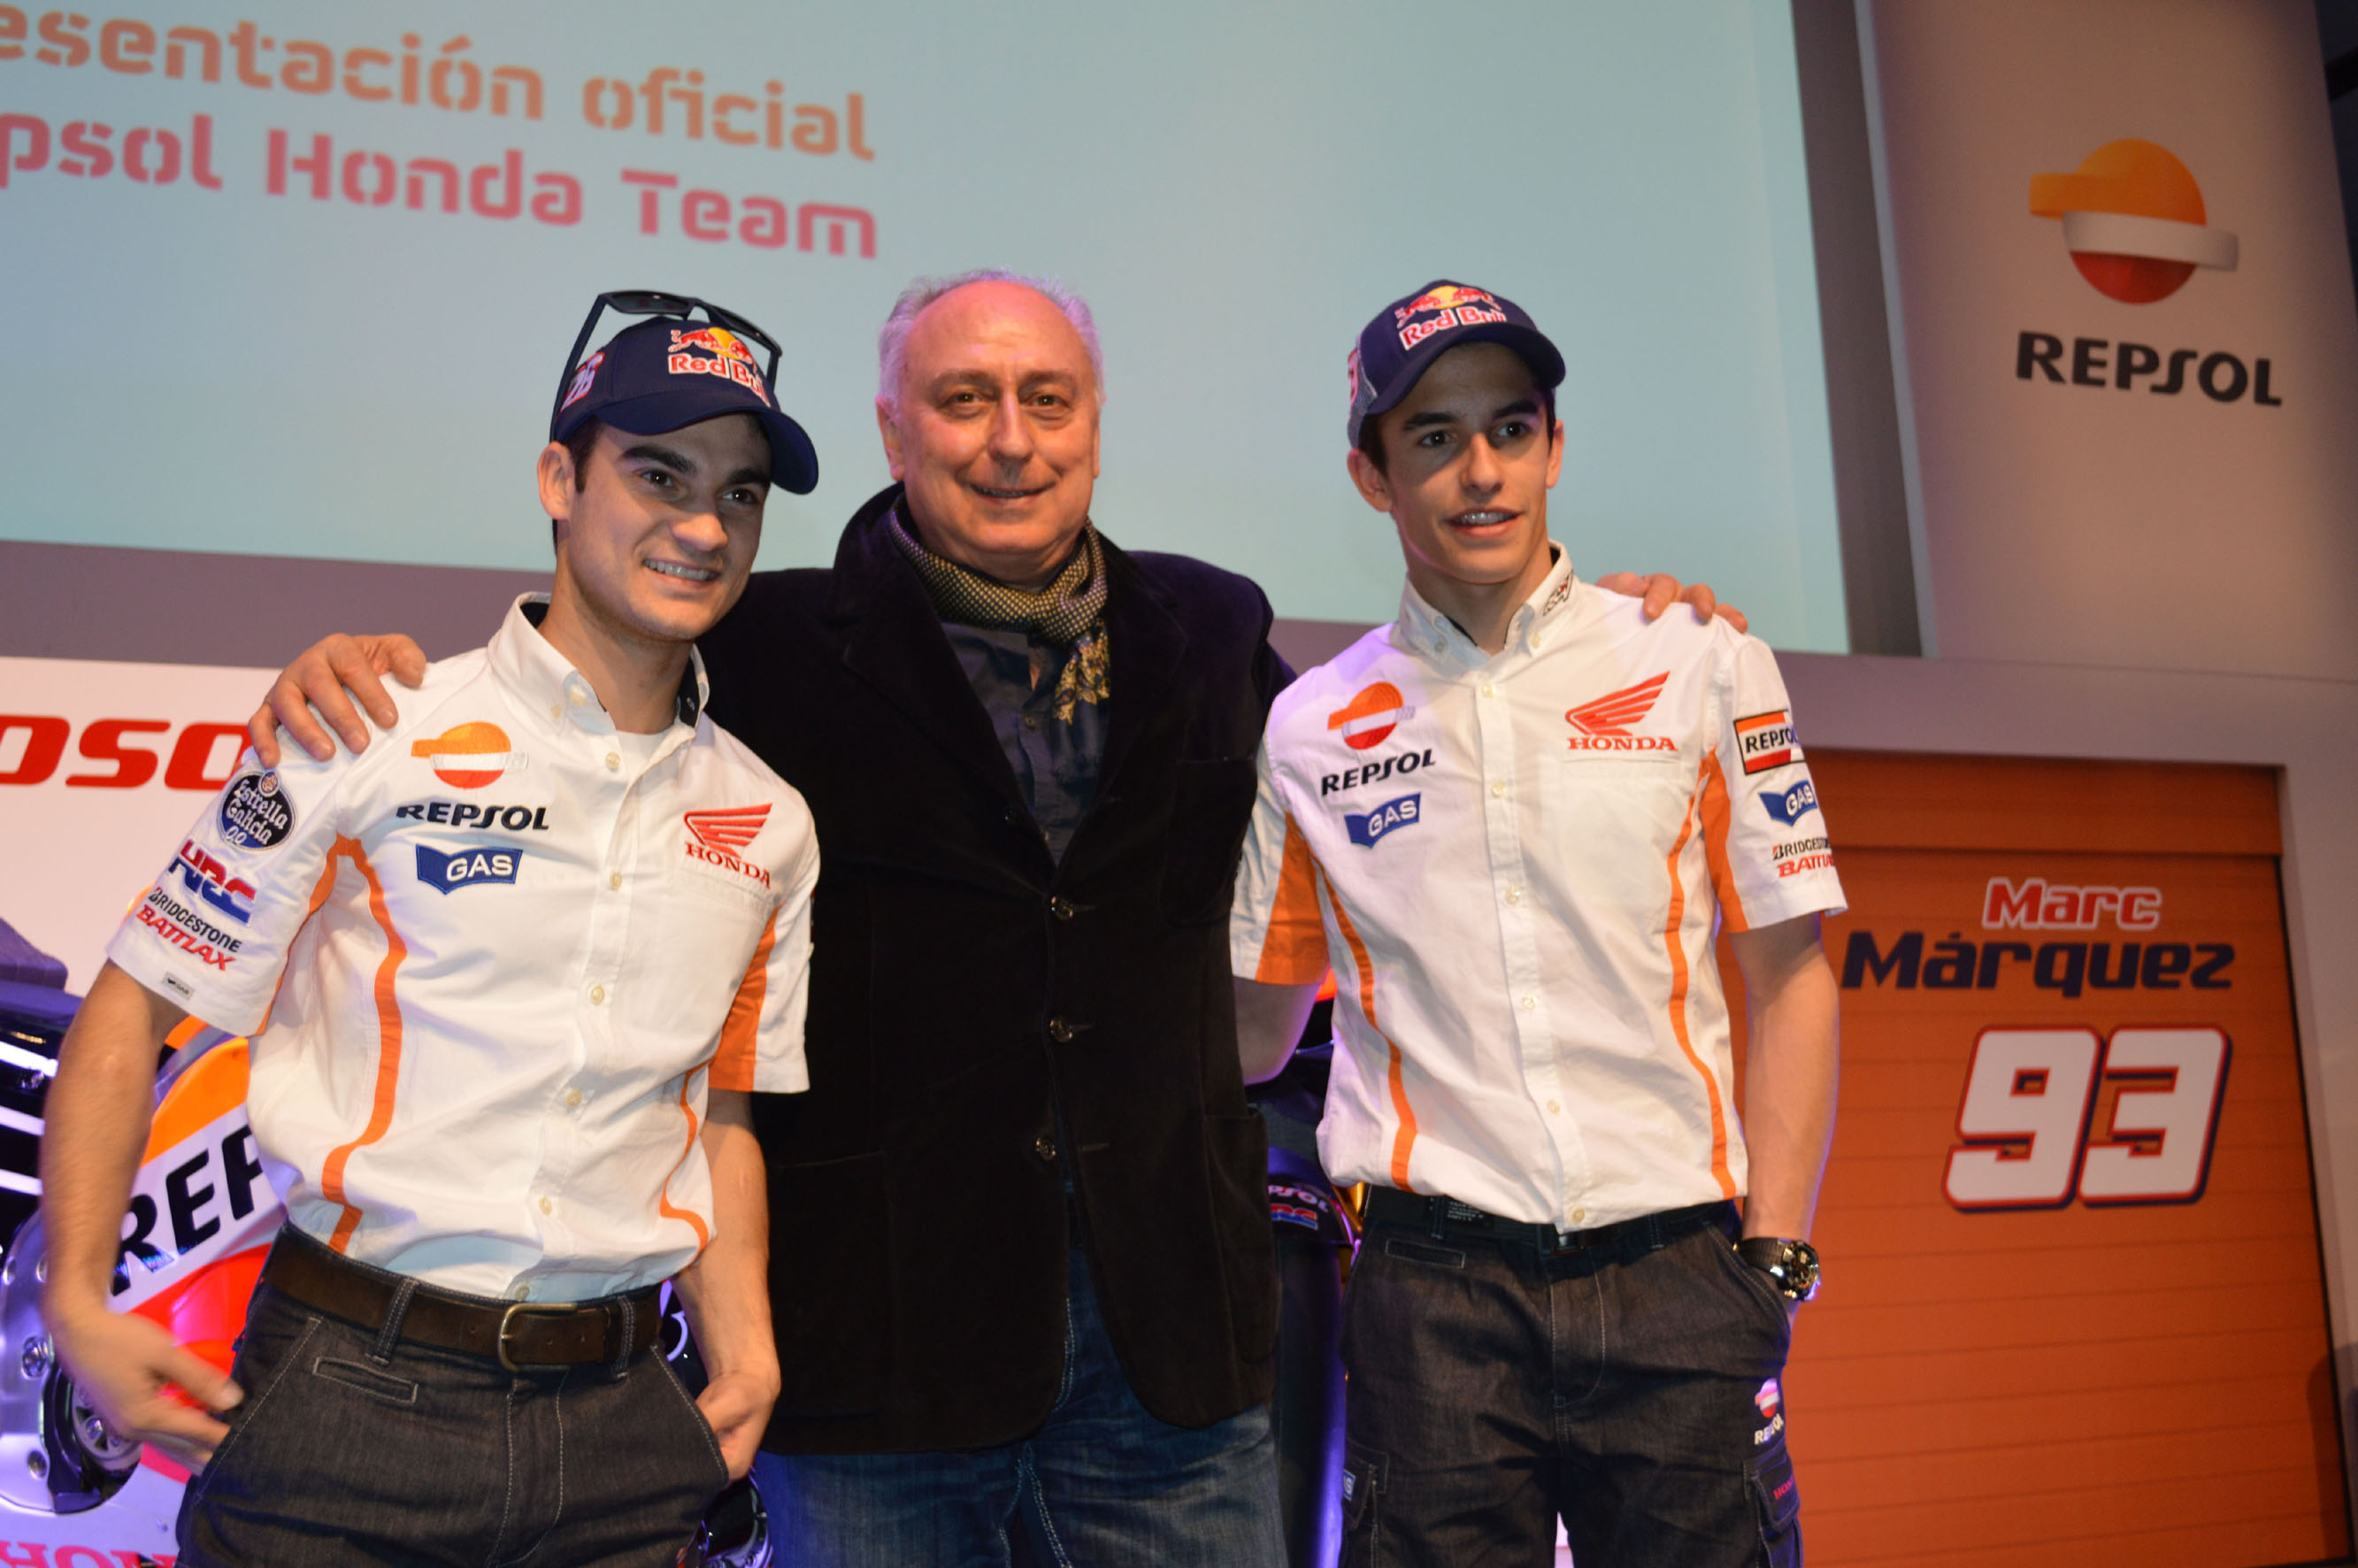 MotoGP 2013 Honda: Gas Jeans festeggia con Dani Pedrosa e Marc Marquez, le nuove divise del team